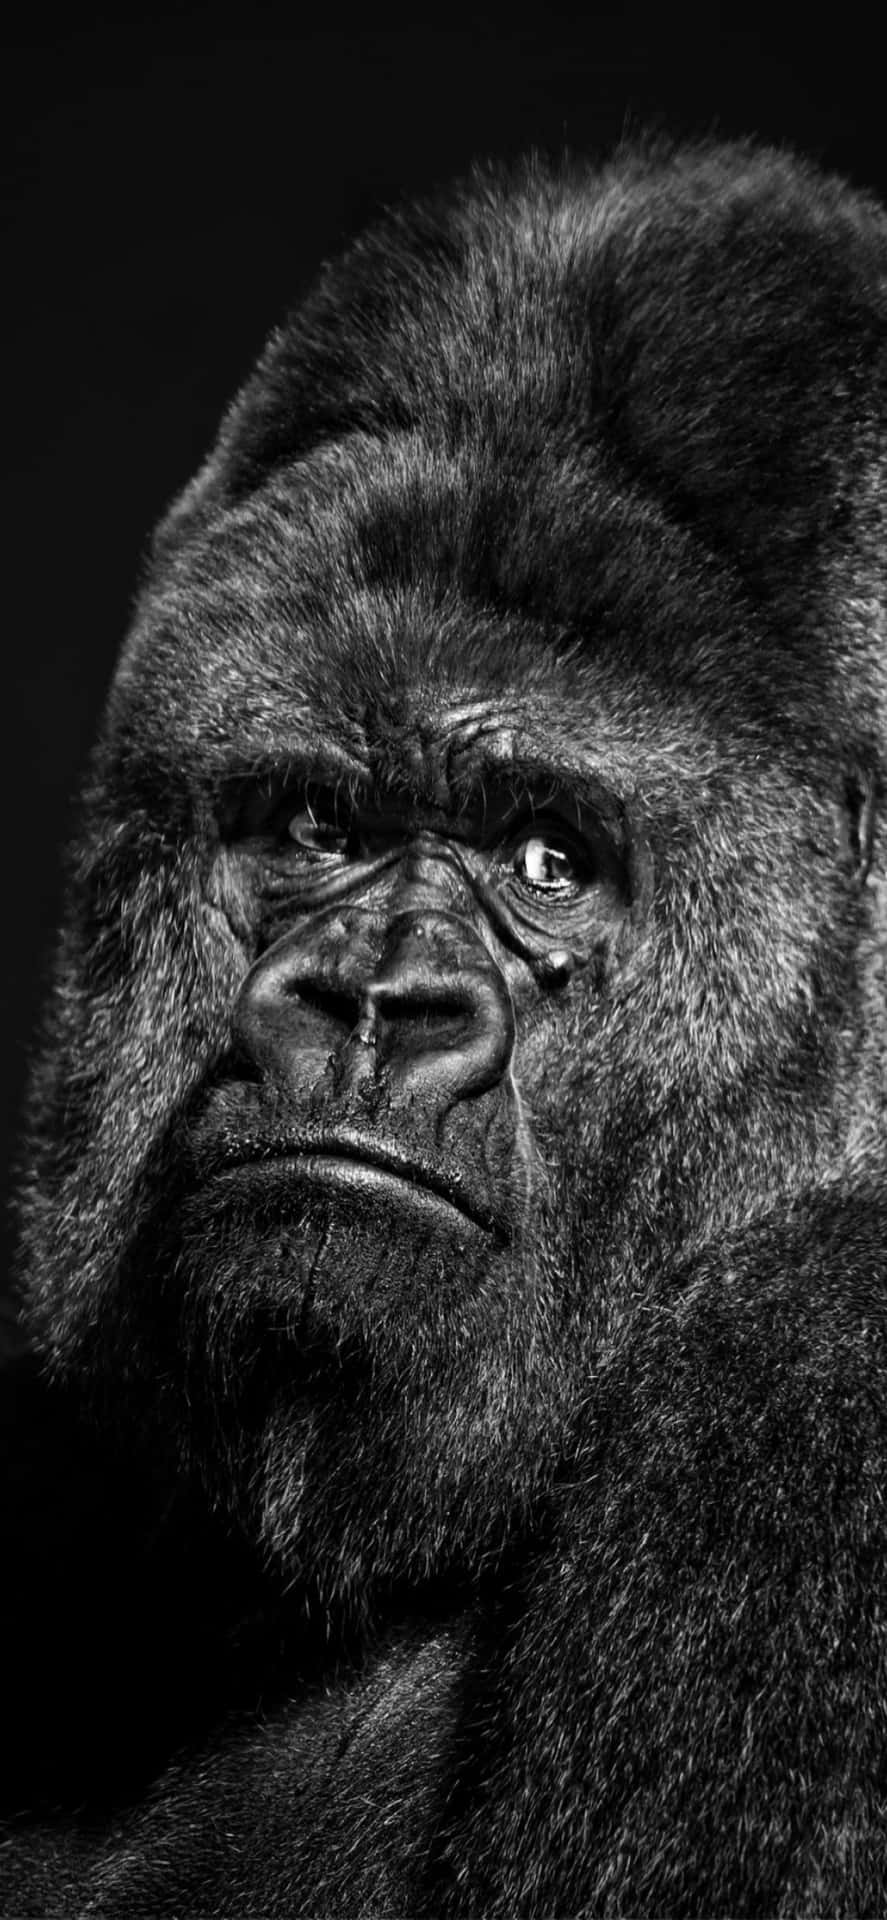 A Burly Gorilla Grasps an Iphone X